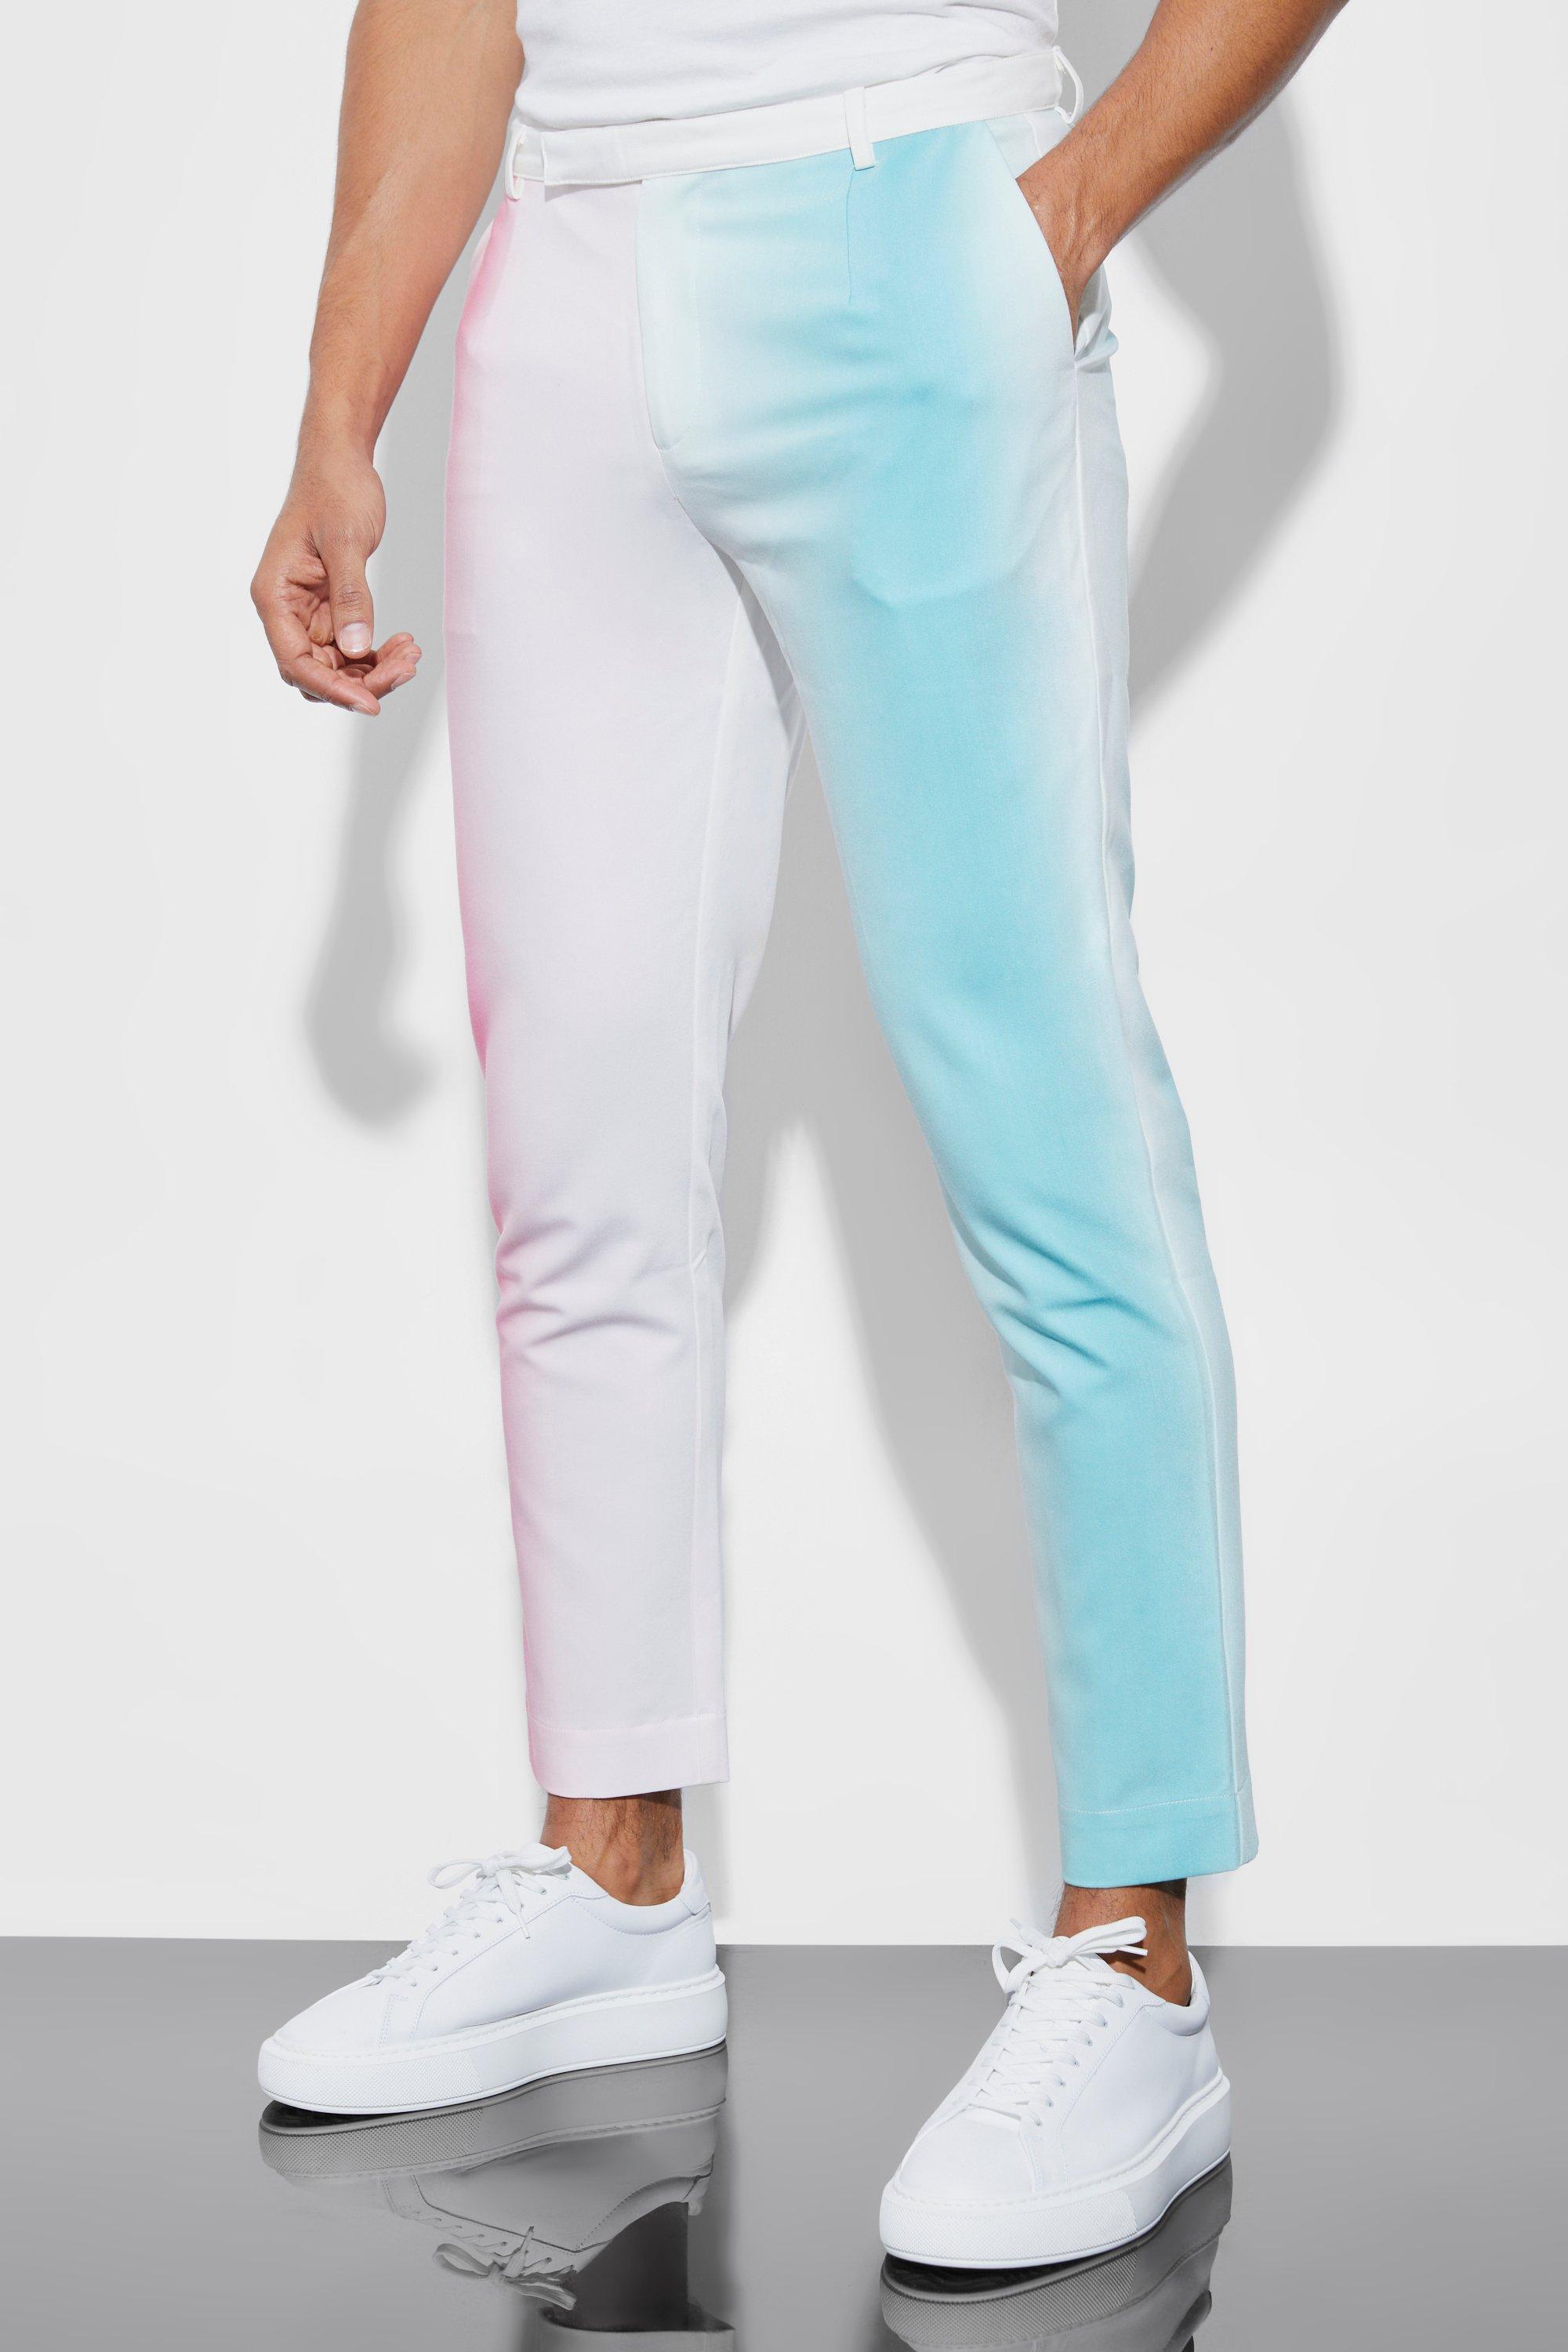 pantalon de costume court à rayures homme - multicolore - 34r, multicolore